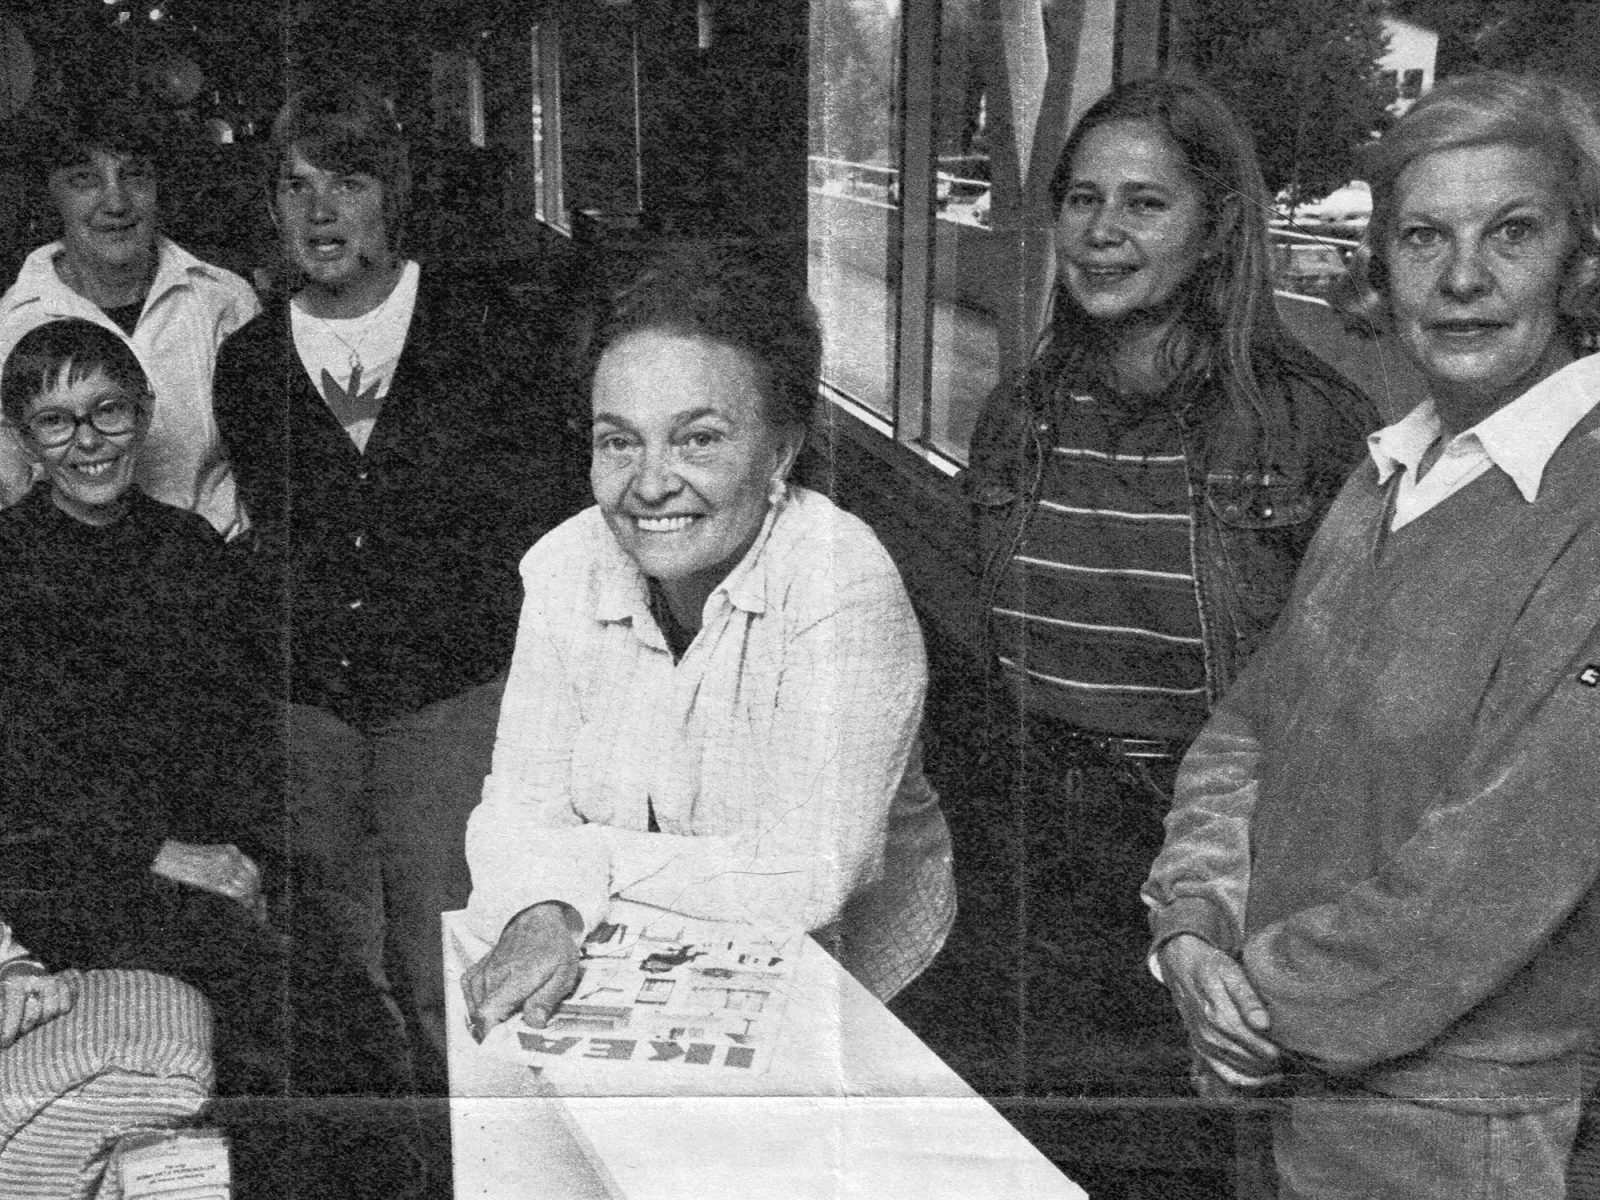 Gruppbild i tidning med sex kvinnor, ledigt klädda. En leende kvinna i vit skjorta håller i en IKEA katalog från 1980-talet.